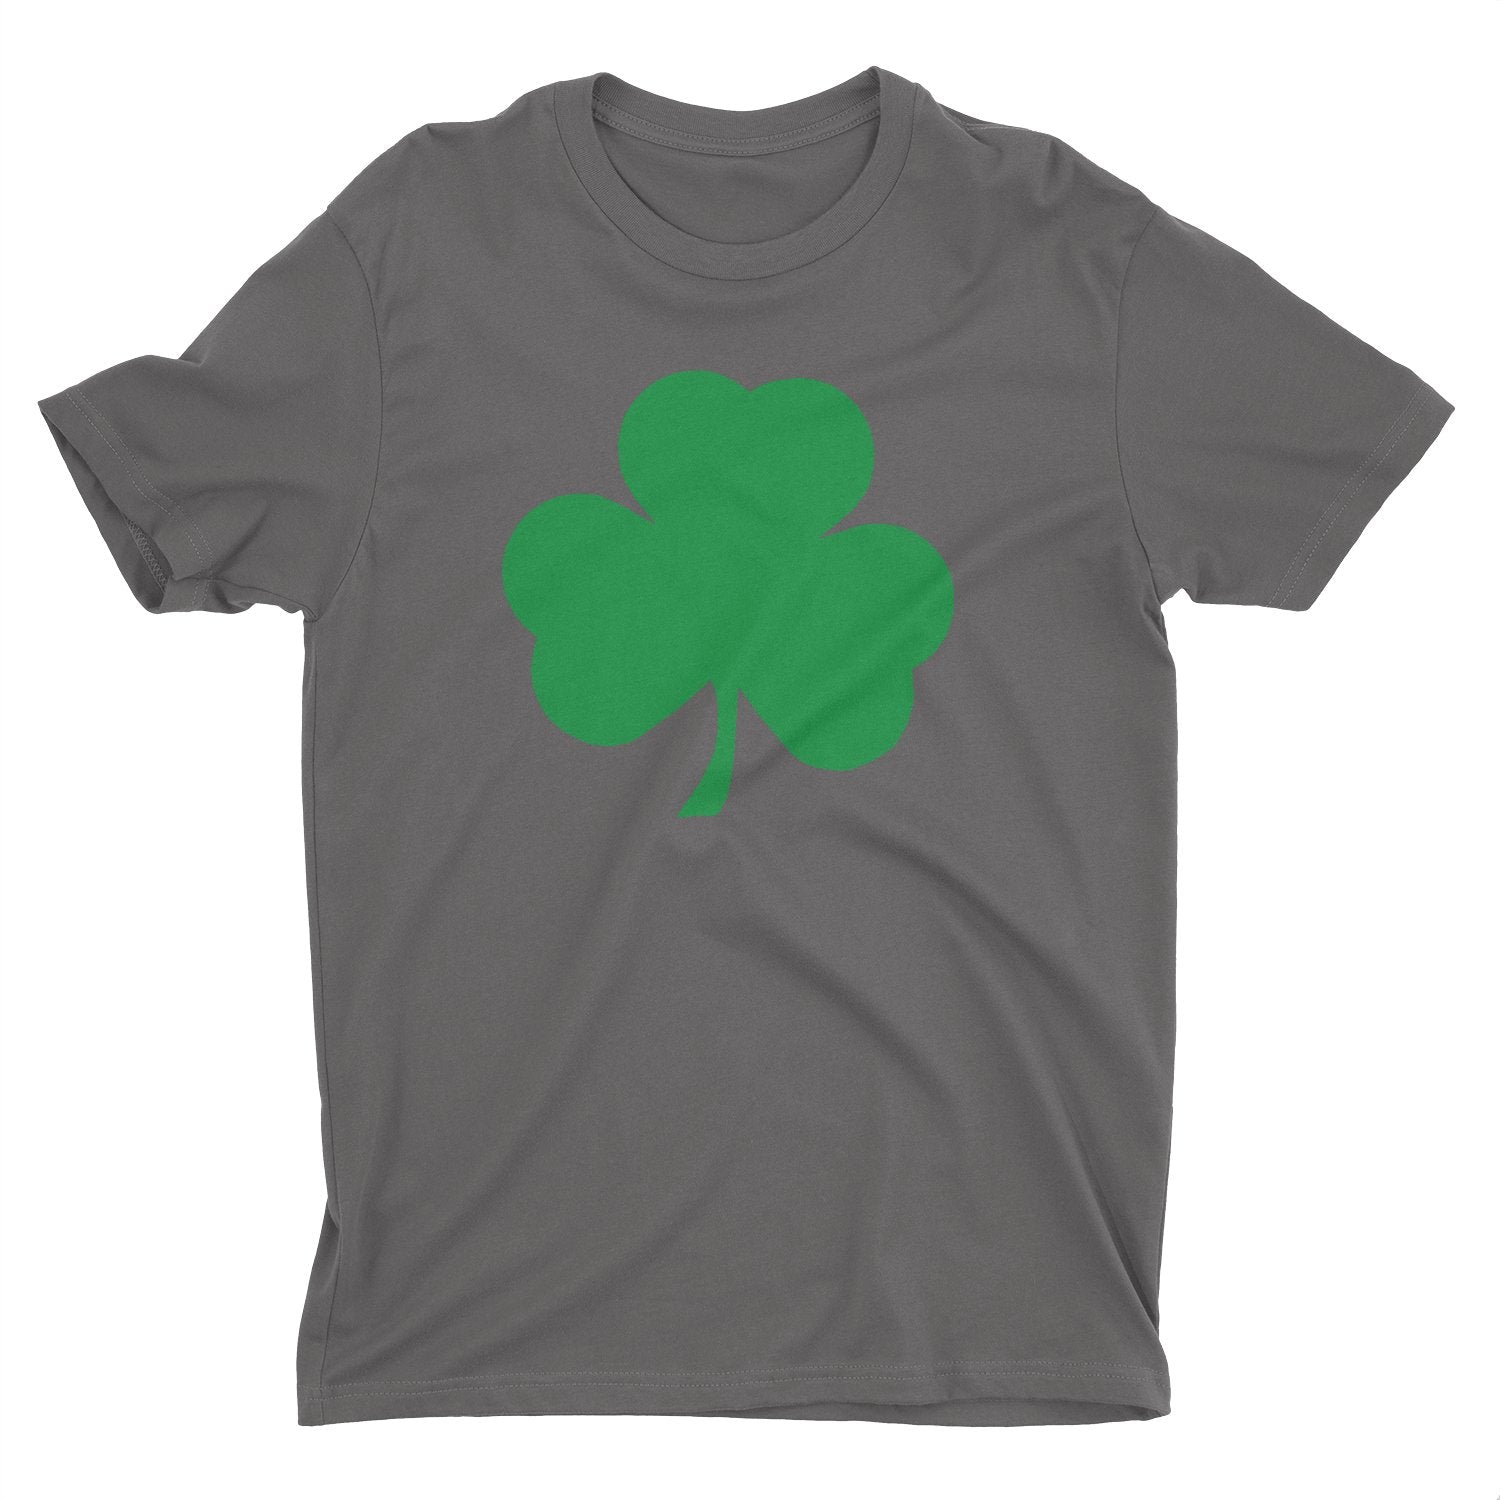 T-shirt pour enfants Shamrock (grand design solide, anthracite et vert)